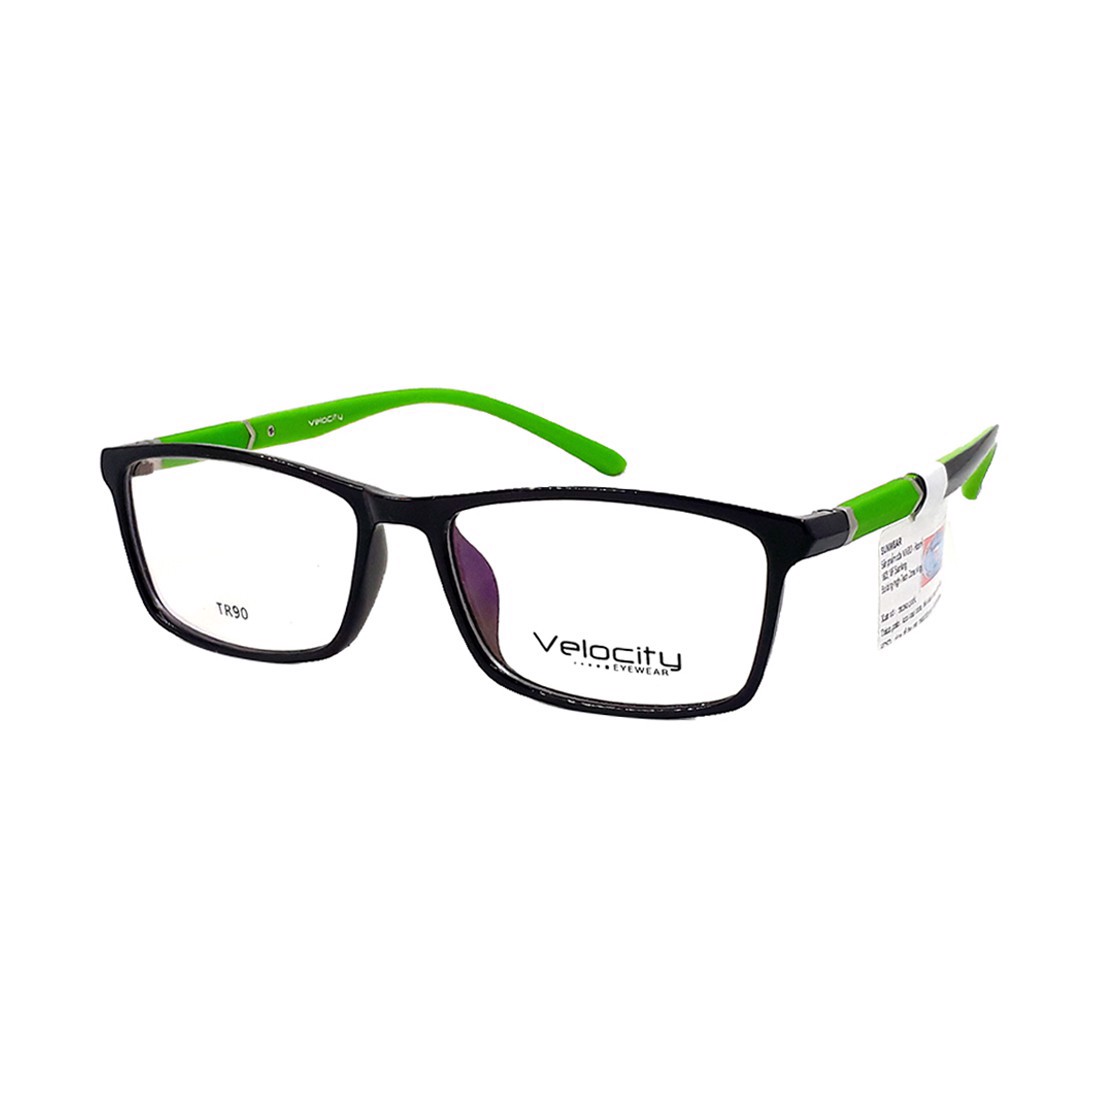 Gọng kính, mắt kính chính hãng VELOCITY VL36460 993 - Tặng 1 ví cầm tay (màu ngẫu nhiên)